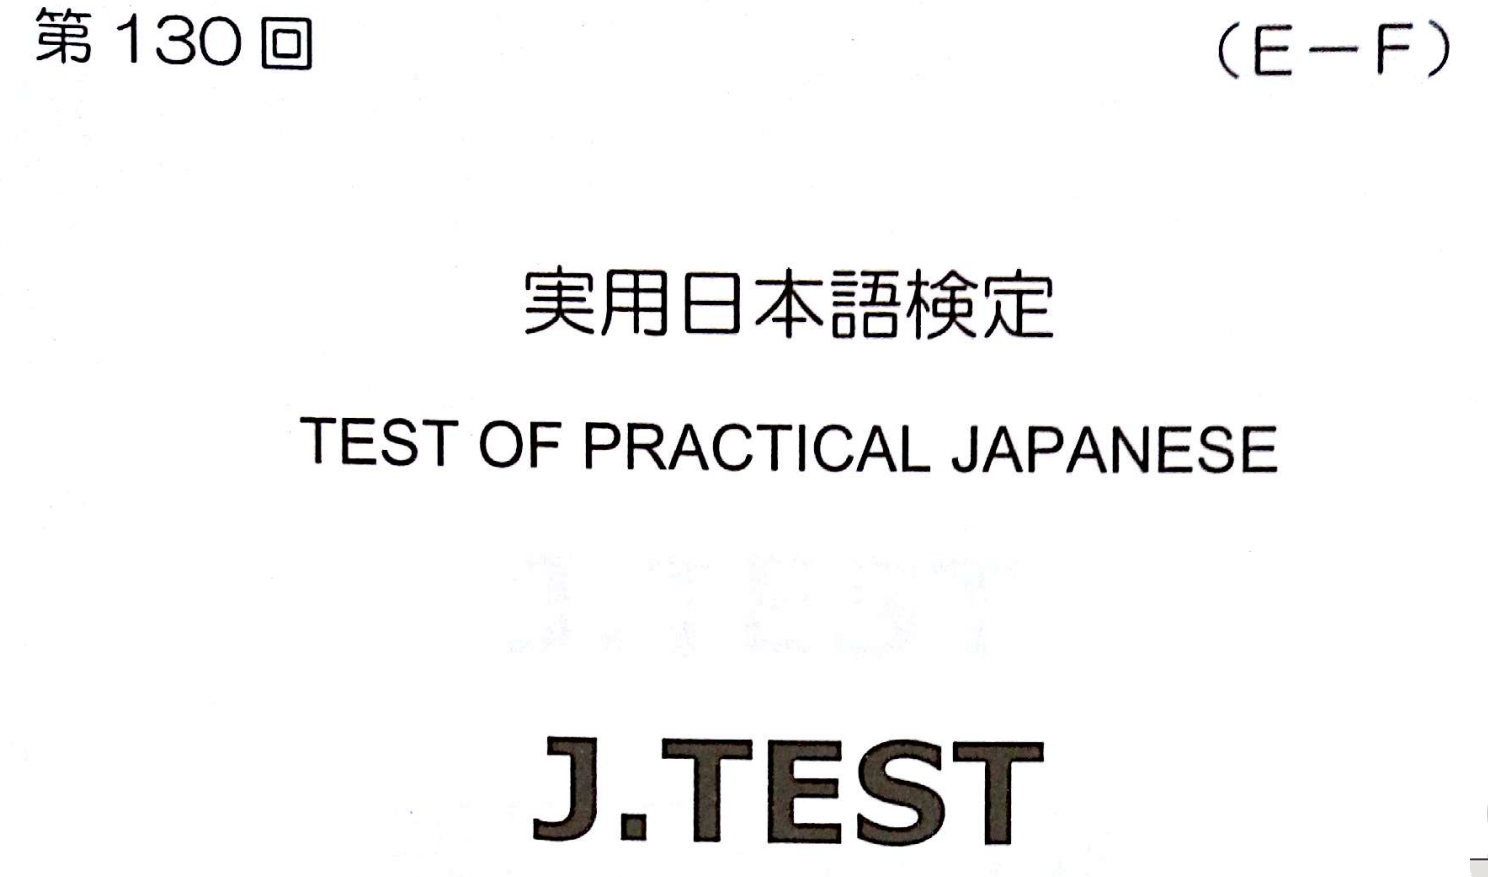 2017年 J.TEST 实用日本语检定（E-F级）   第130回考试